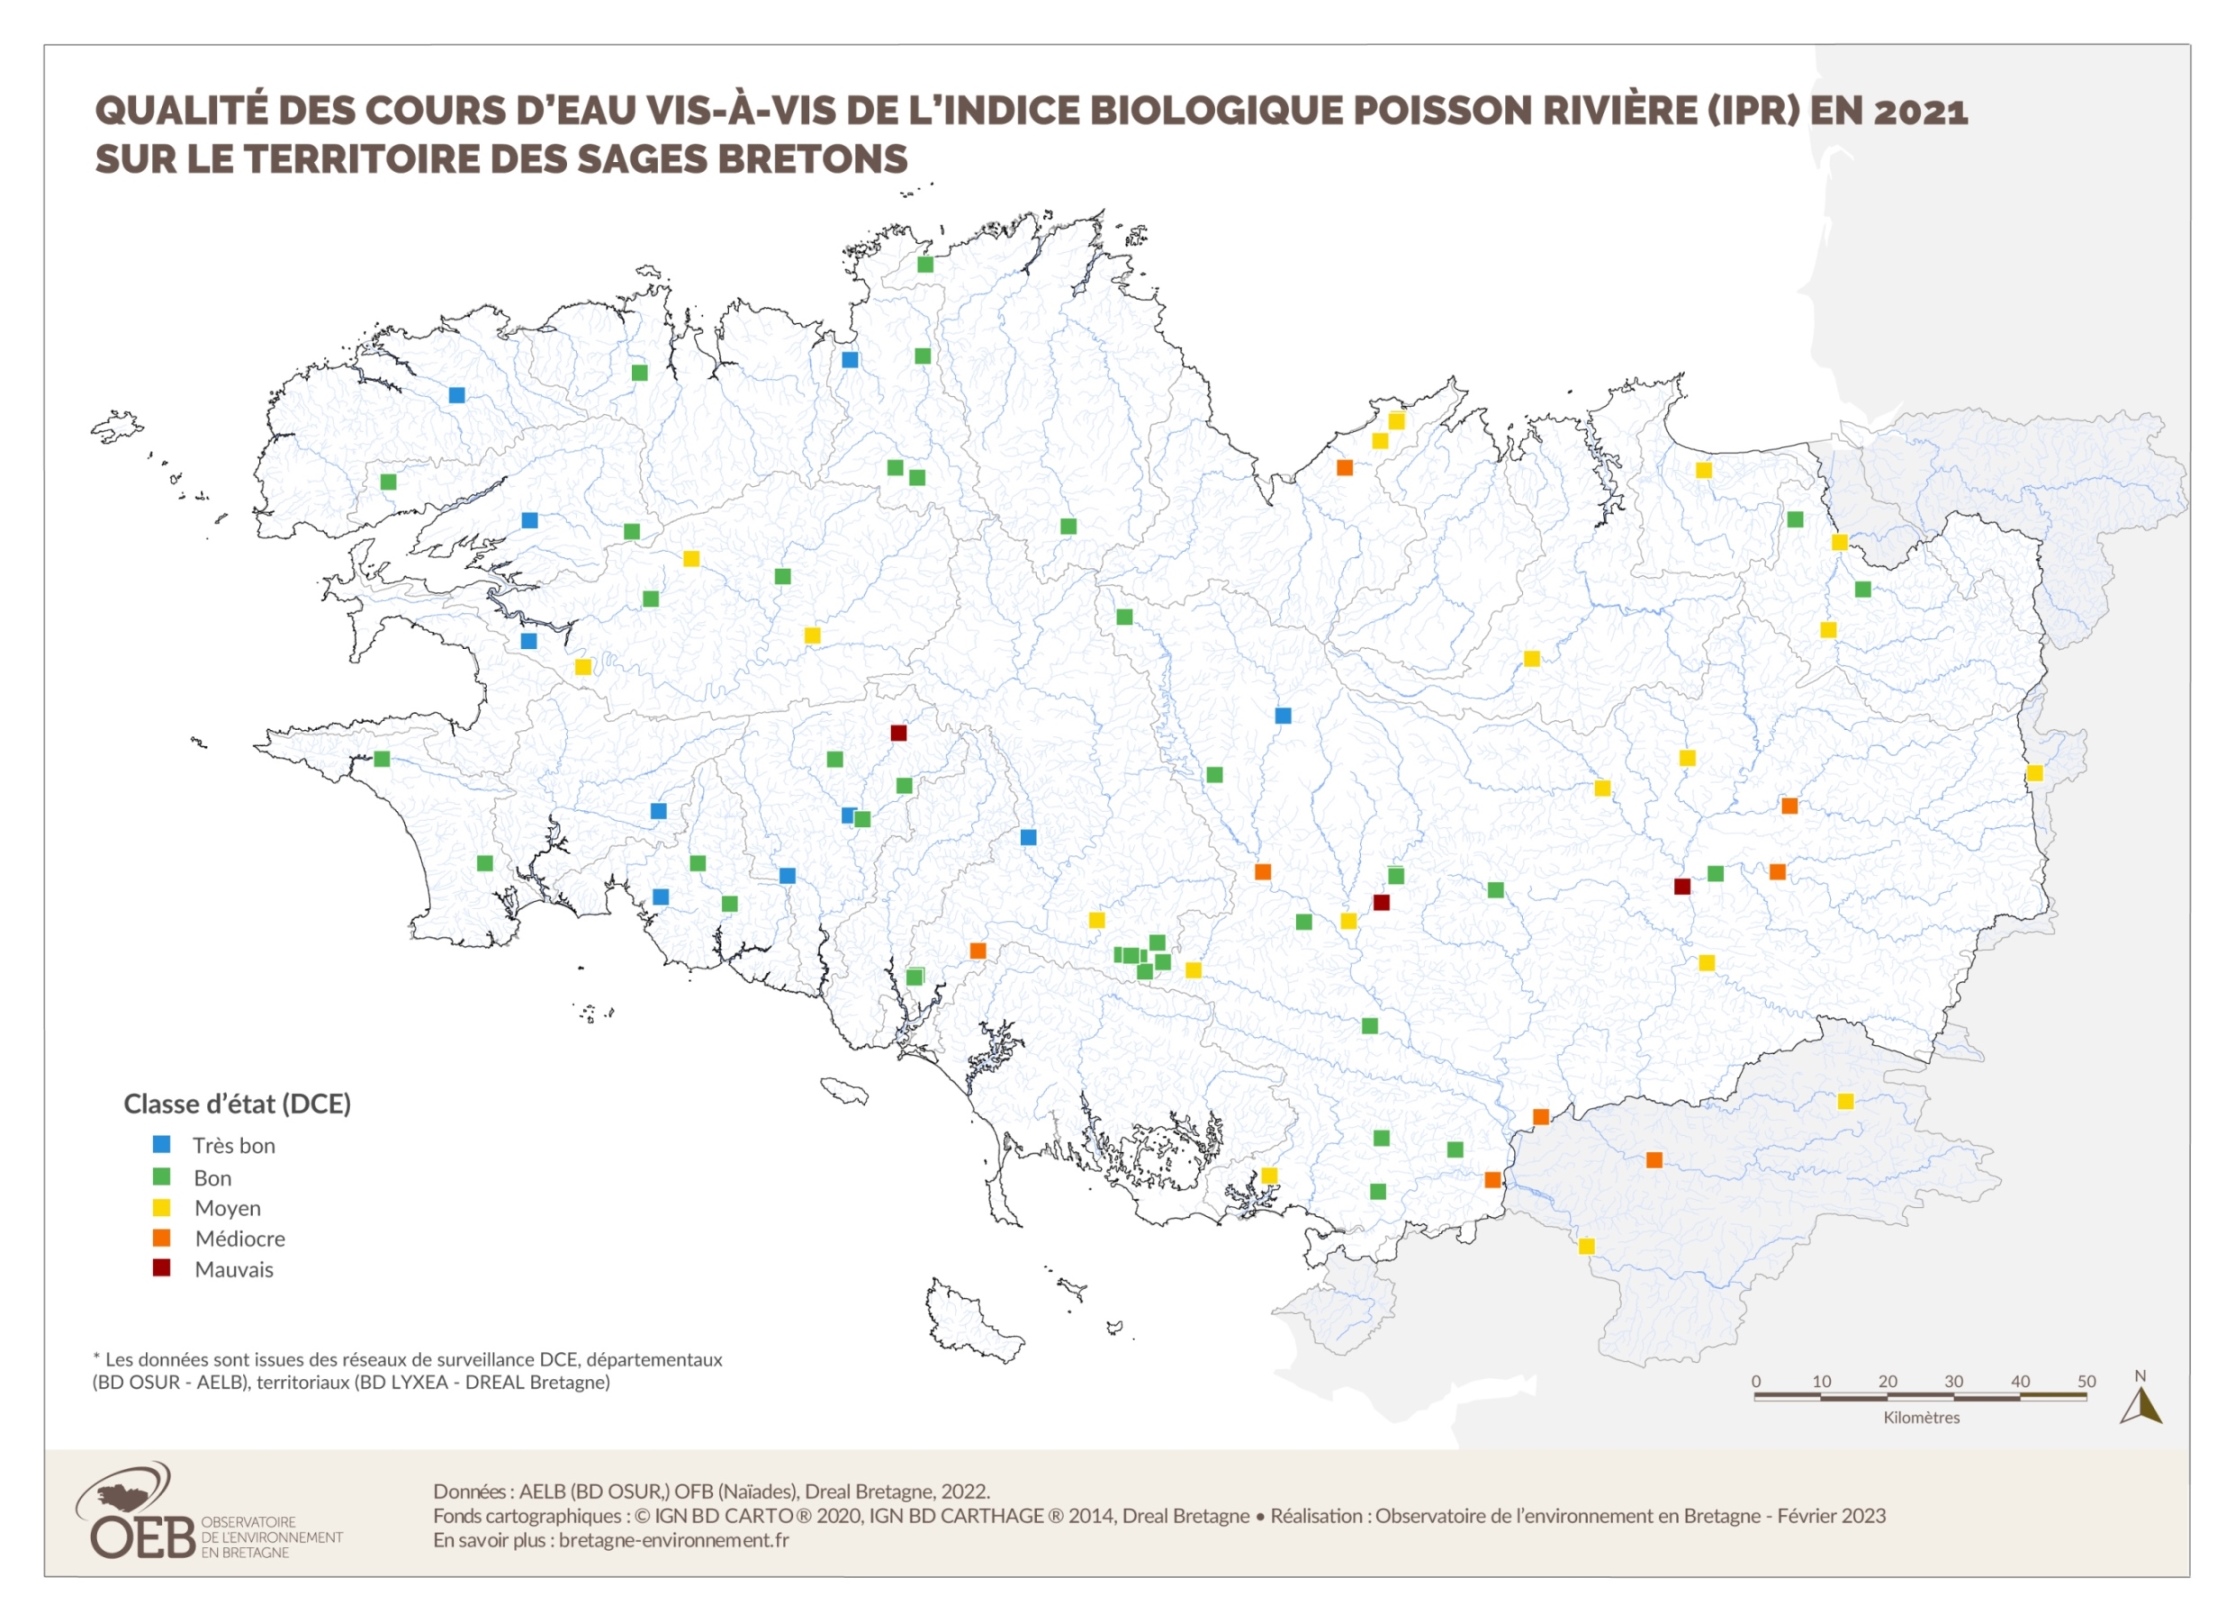 Qualité des cours d'eau bretons vis-à-vis de l'indice poissons (IPR) en 2021